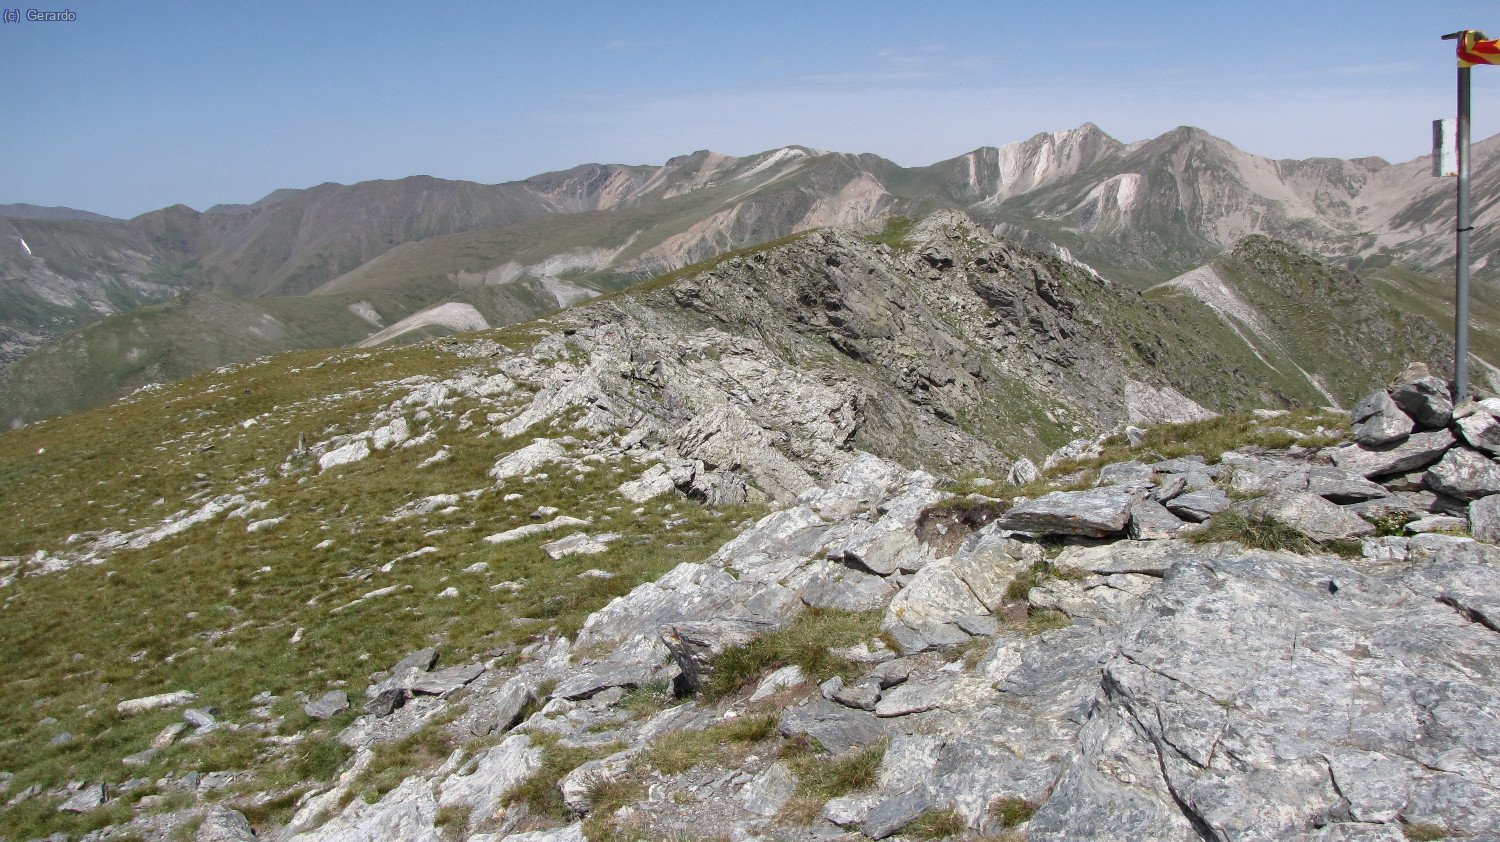 Noroeste, el eje de las montañas del Ripollès, con Infern y Freser a la derecha.